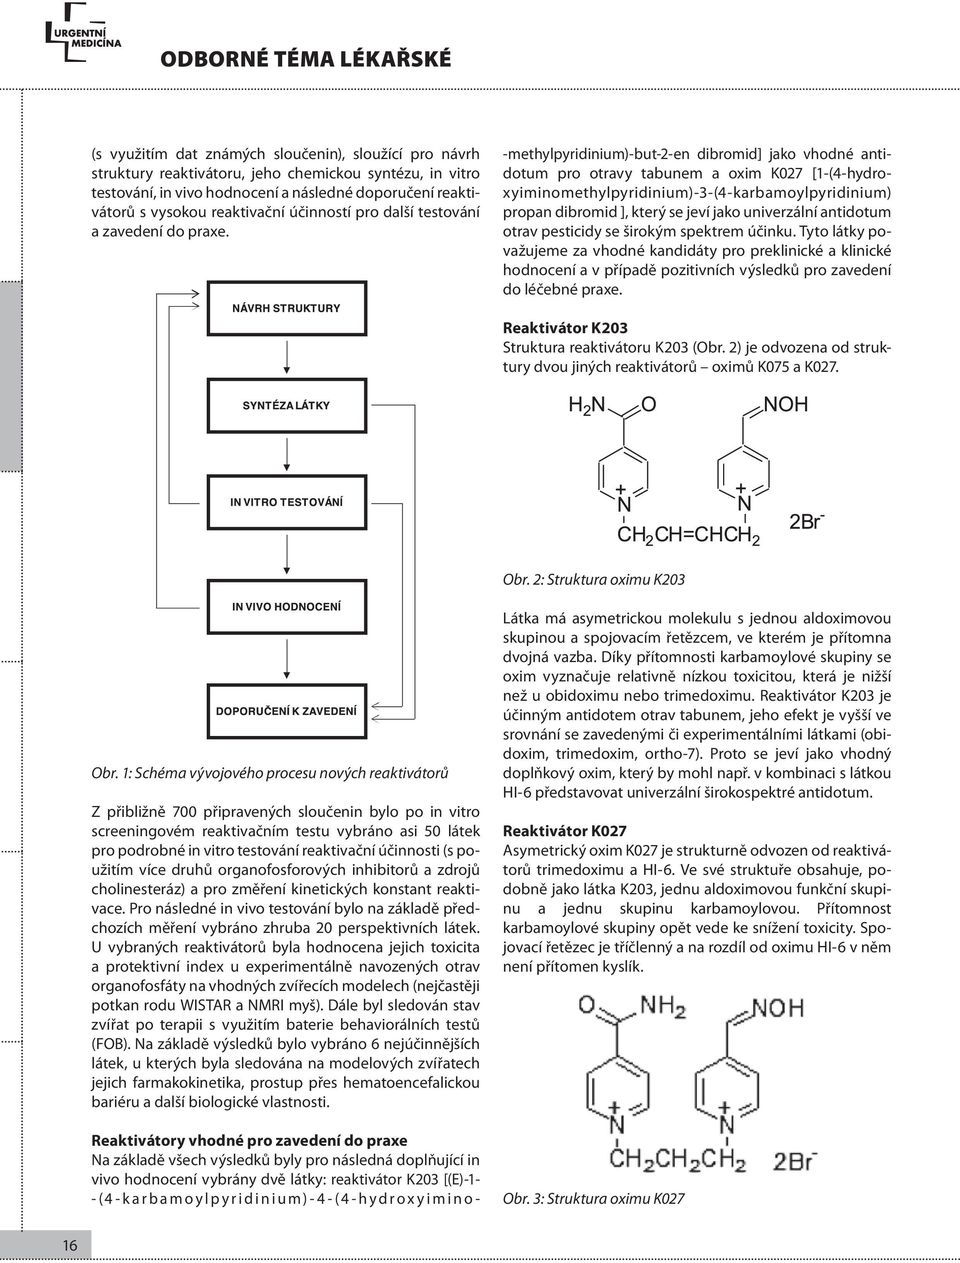 -methylpyridinium)-but-2-en dibromid] jako vhodné antidotum pro otravy tabunem a oxim K027 [1-(4-hydroxyiminomethylpyridinium)-3-(4-karbamoylpyridinium) propan dibromid ], který se jeví jako